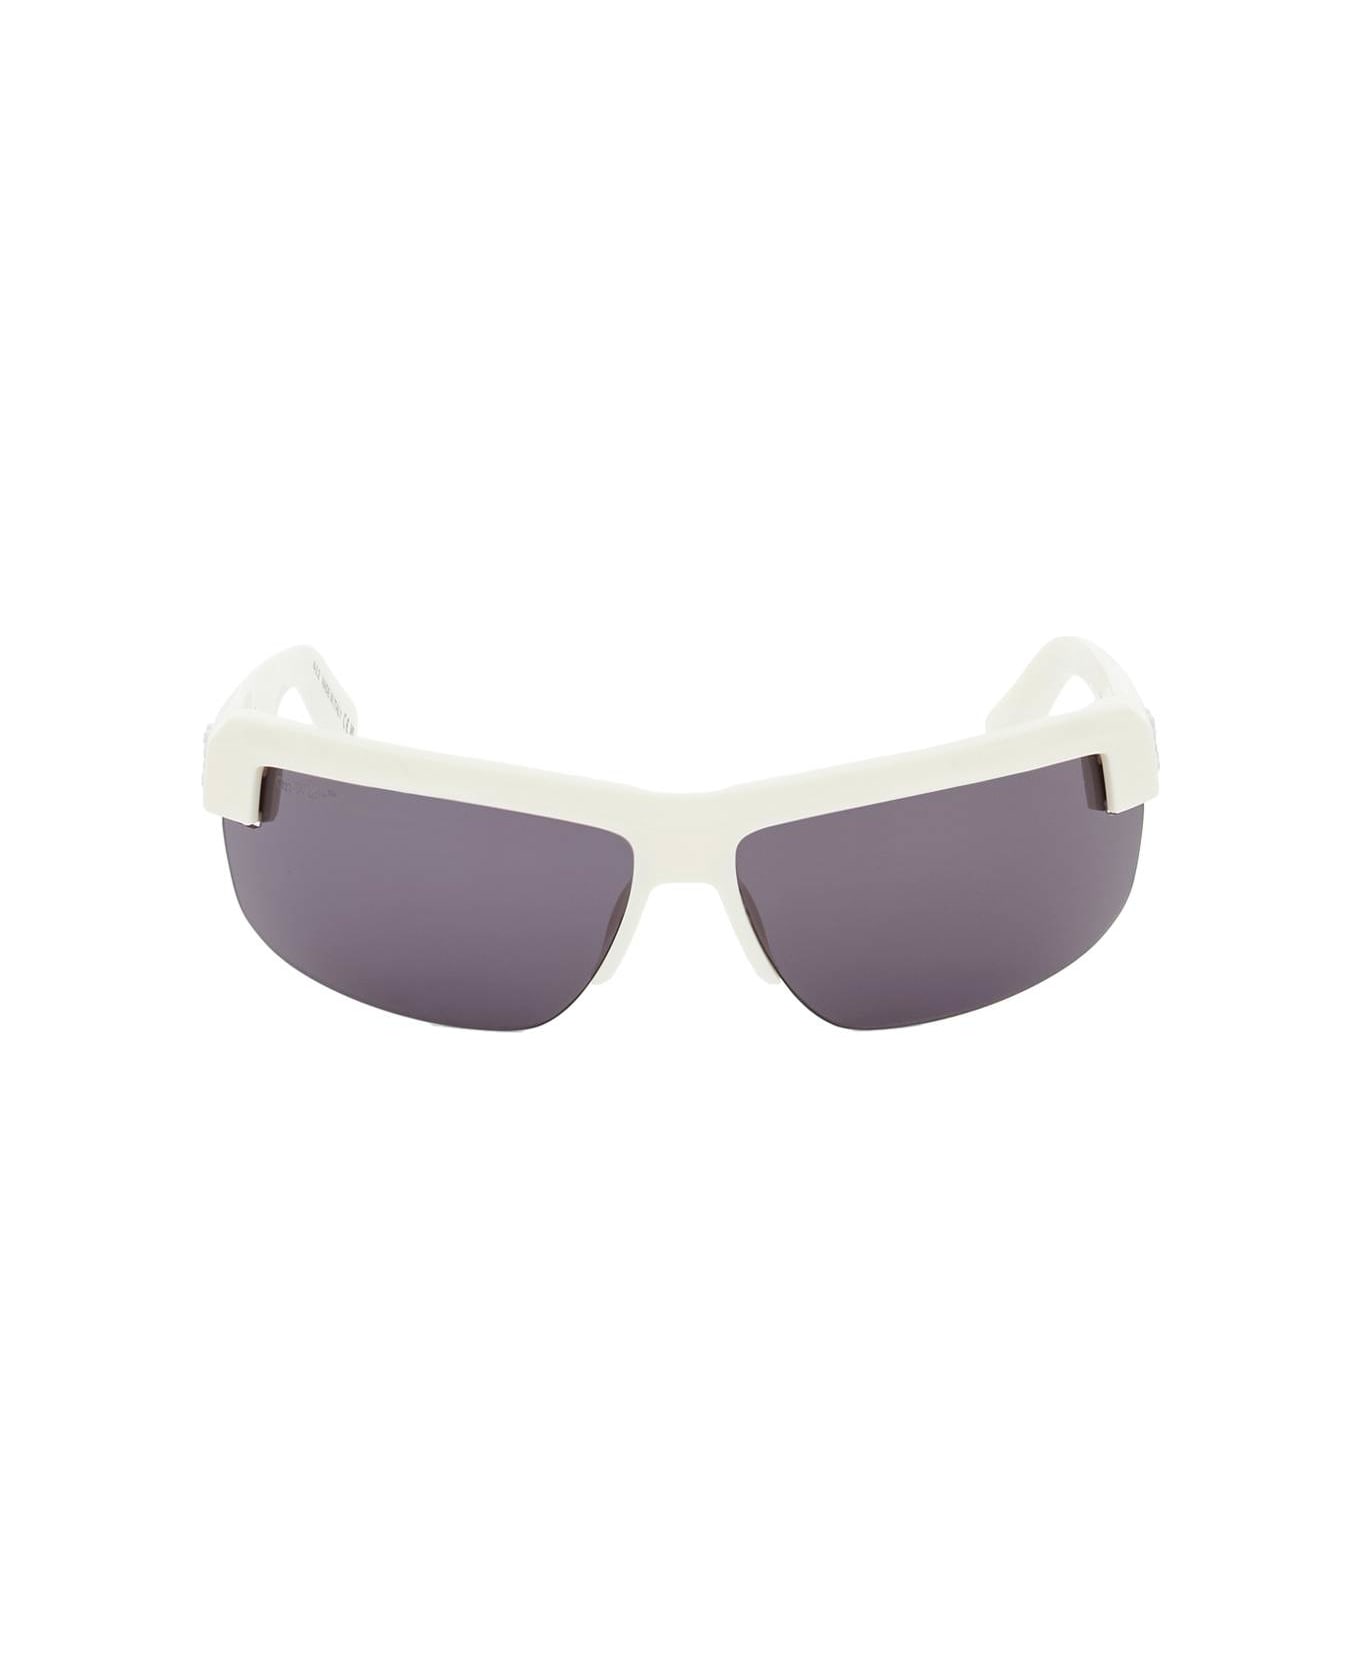 Off-White Toledo Sunglasses - WHITE DARK GREY (White)